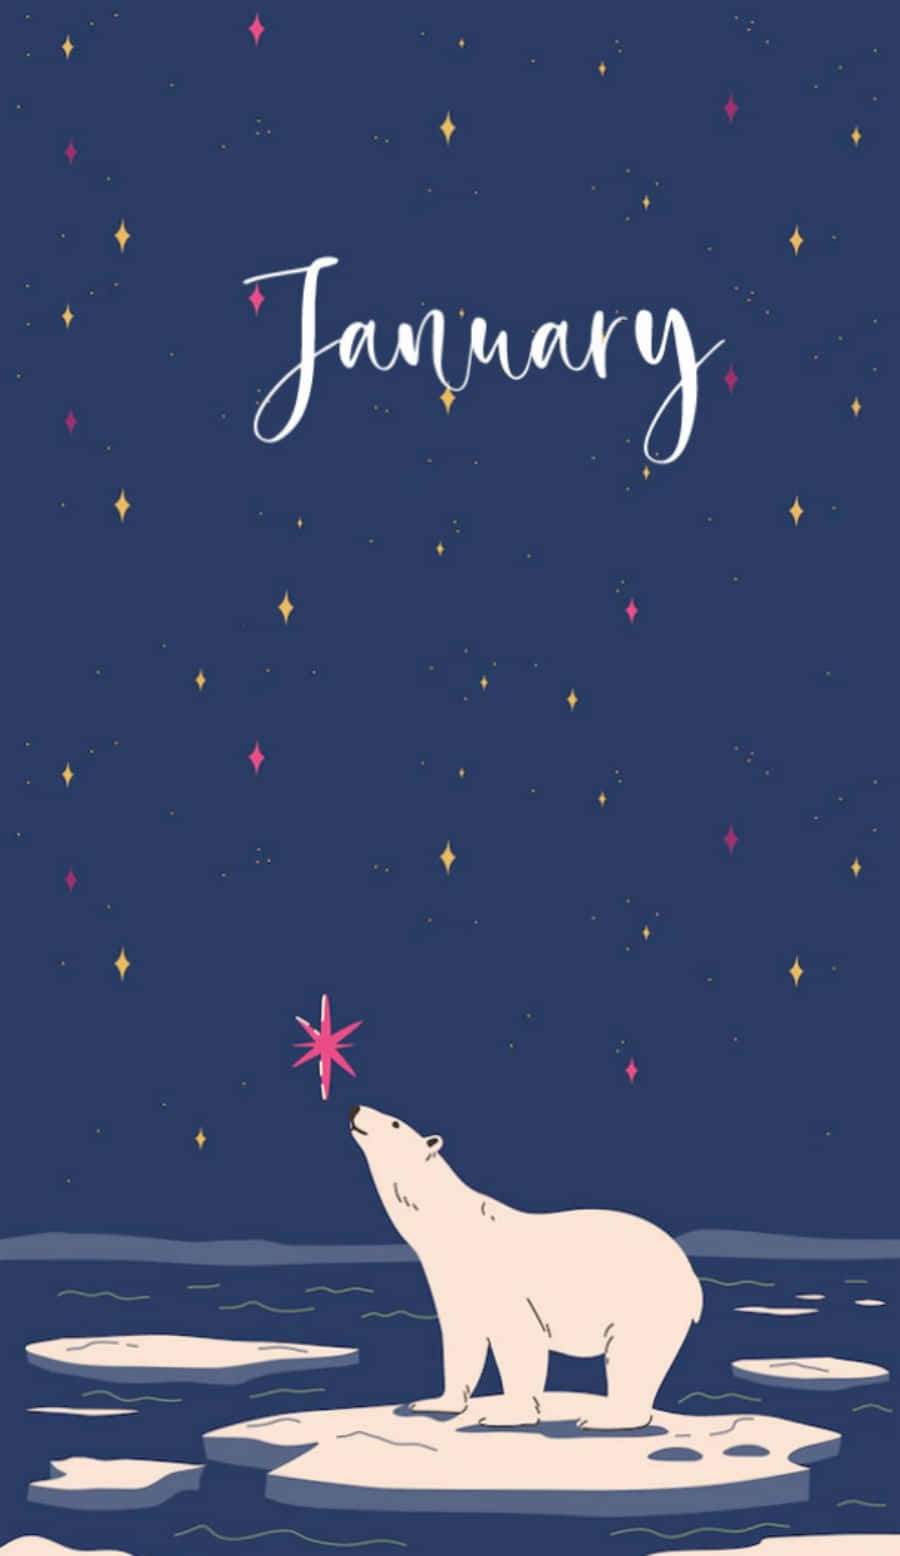 Polar Bear Art January Phone Wallpaper